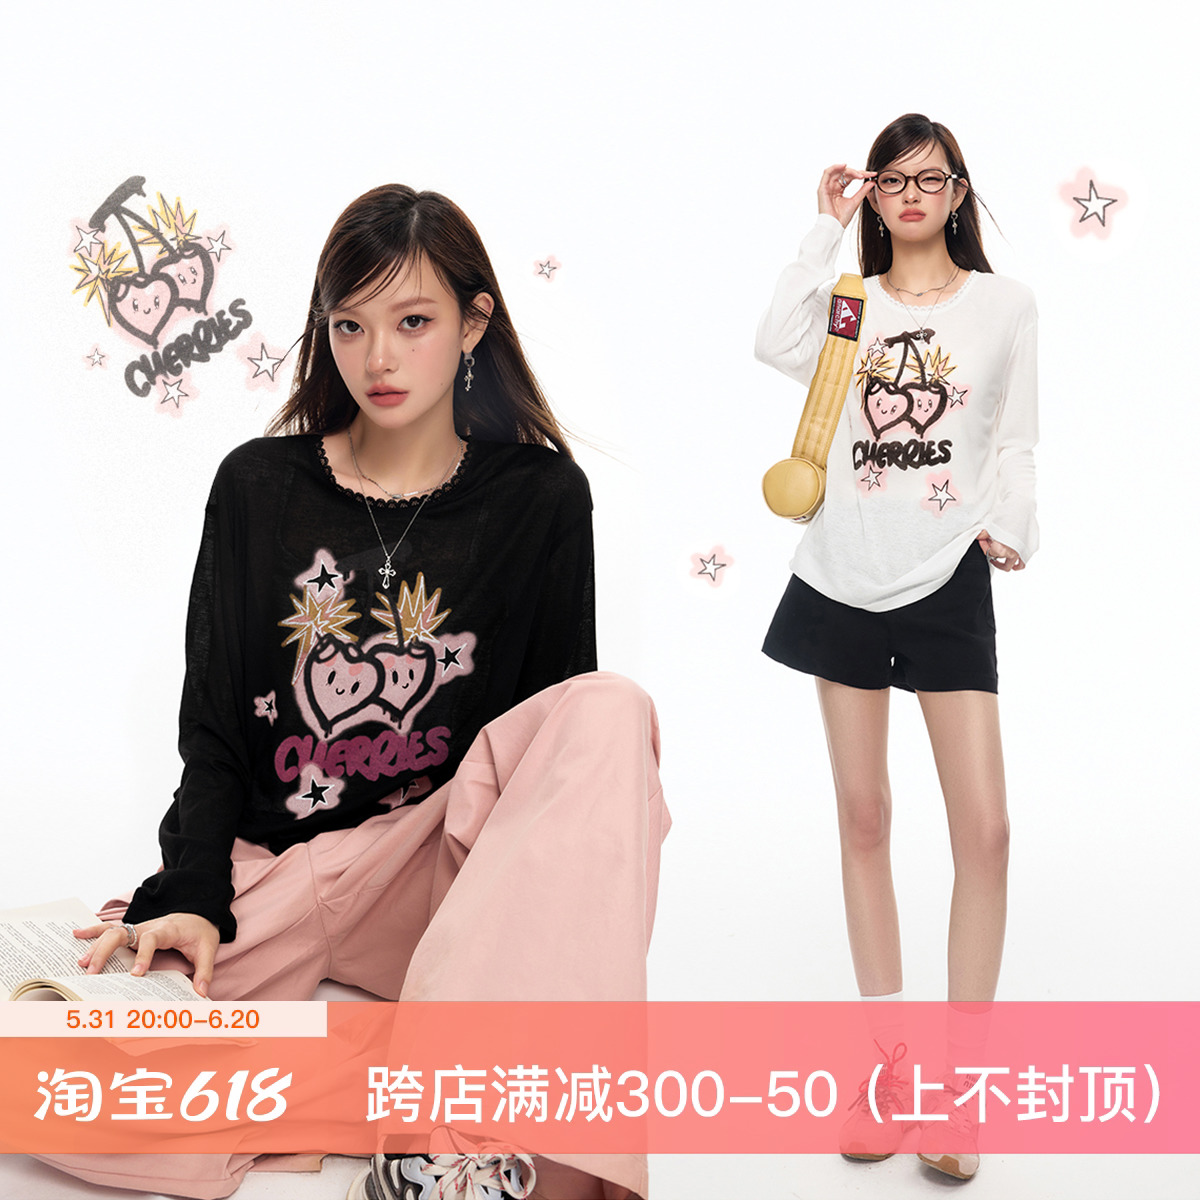 【618狂欢节】樱桃印花图案领口拼接蕾丝花边设计长袖T恤